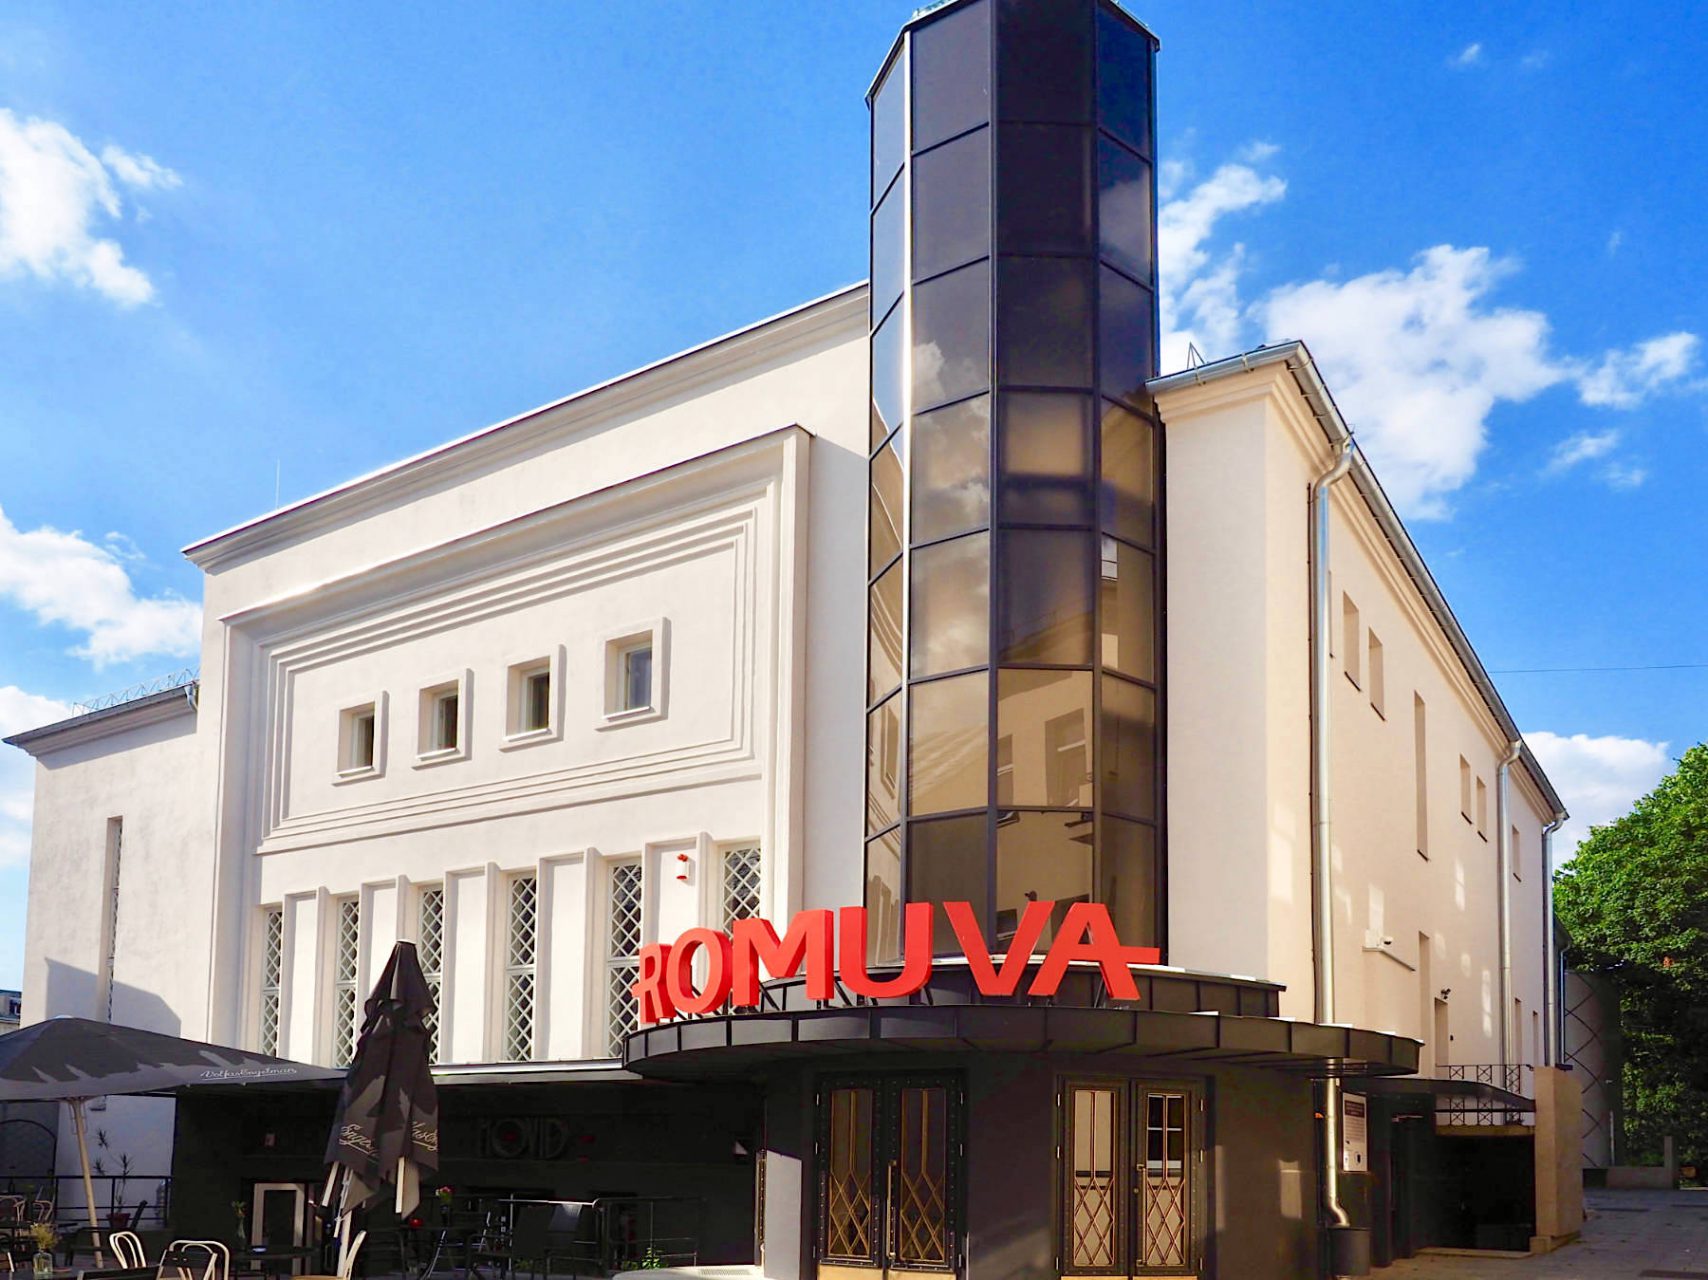 Kulturpalast.. Etwas zurück gesetzt von der Laisvės Aleja lädt das Romuva-Kino draußen wie drinnen zum Verweilen ein. Entworfen von Nikolajus Mačiulskis und 1940 eröffnet, bot es hinter seiner Art-Déco-Fassade die modernste Technik für fast siebenhundert Zuschauer. Aufwendig wieder hergerichtet ist es heute das zentrale Arthouse-Filmtheater in Kaunas.